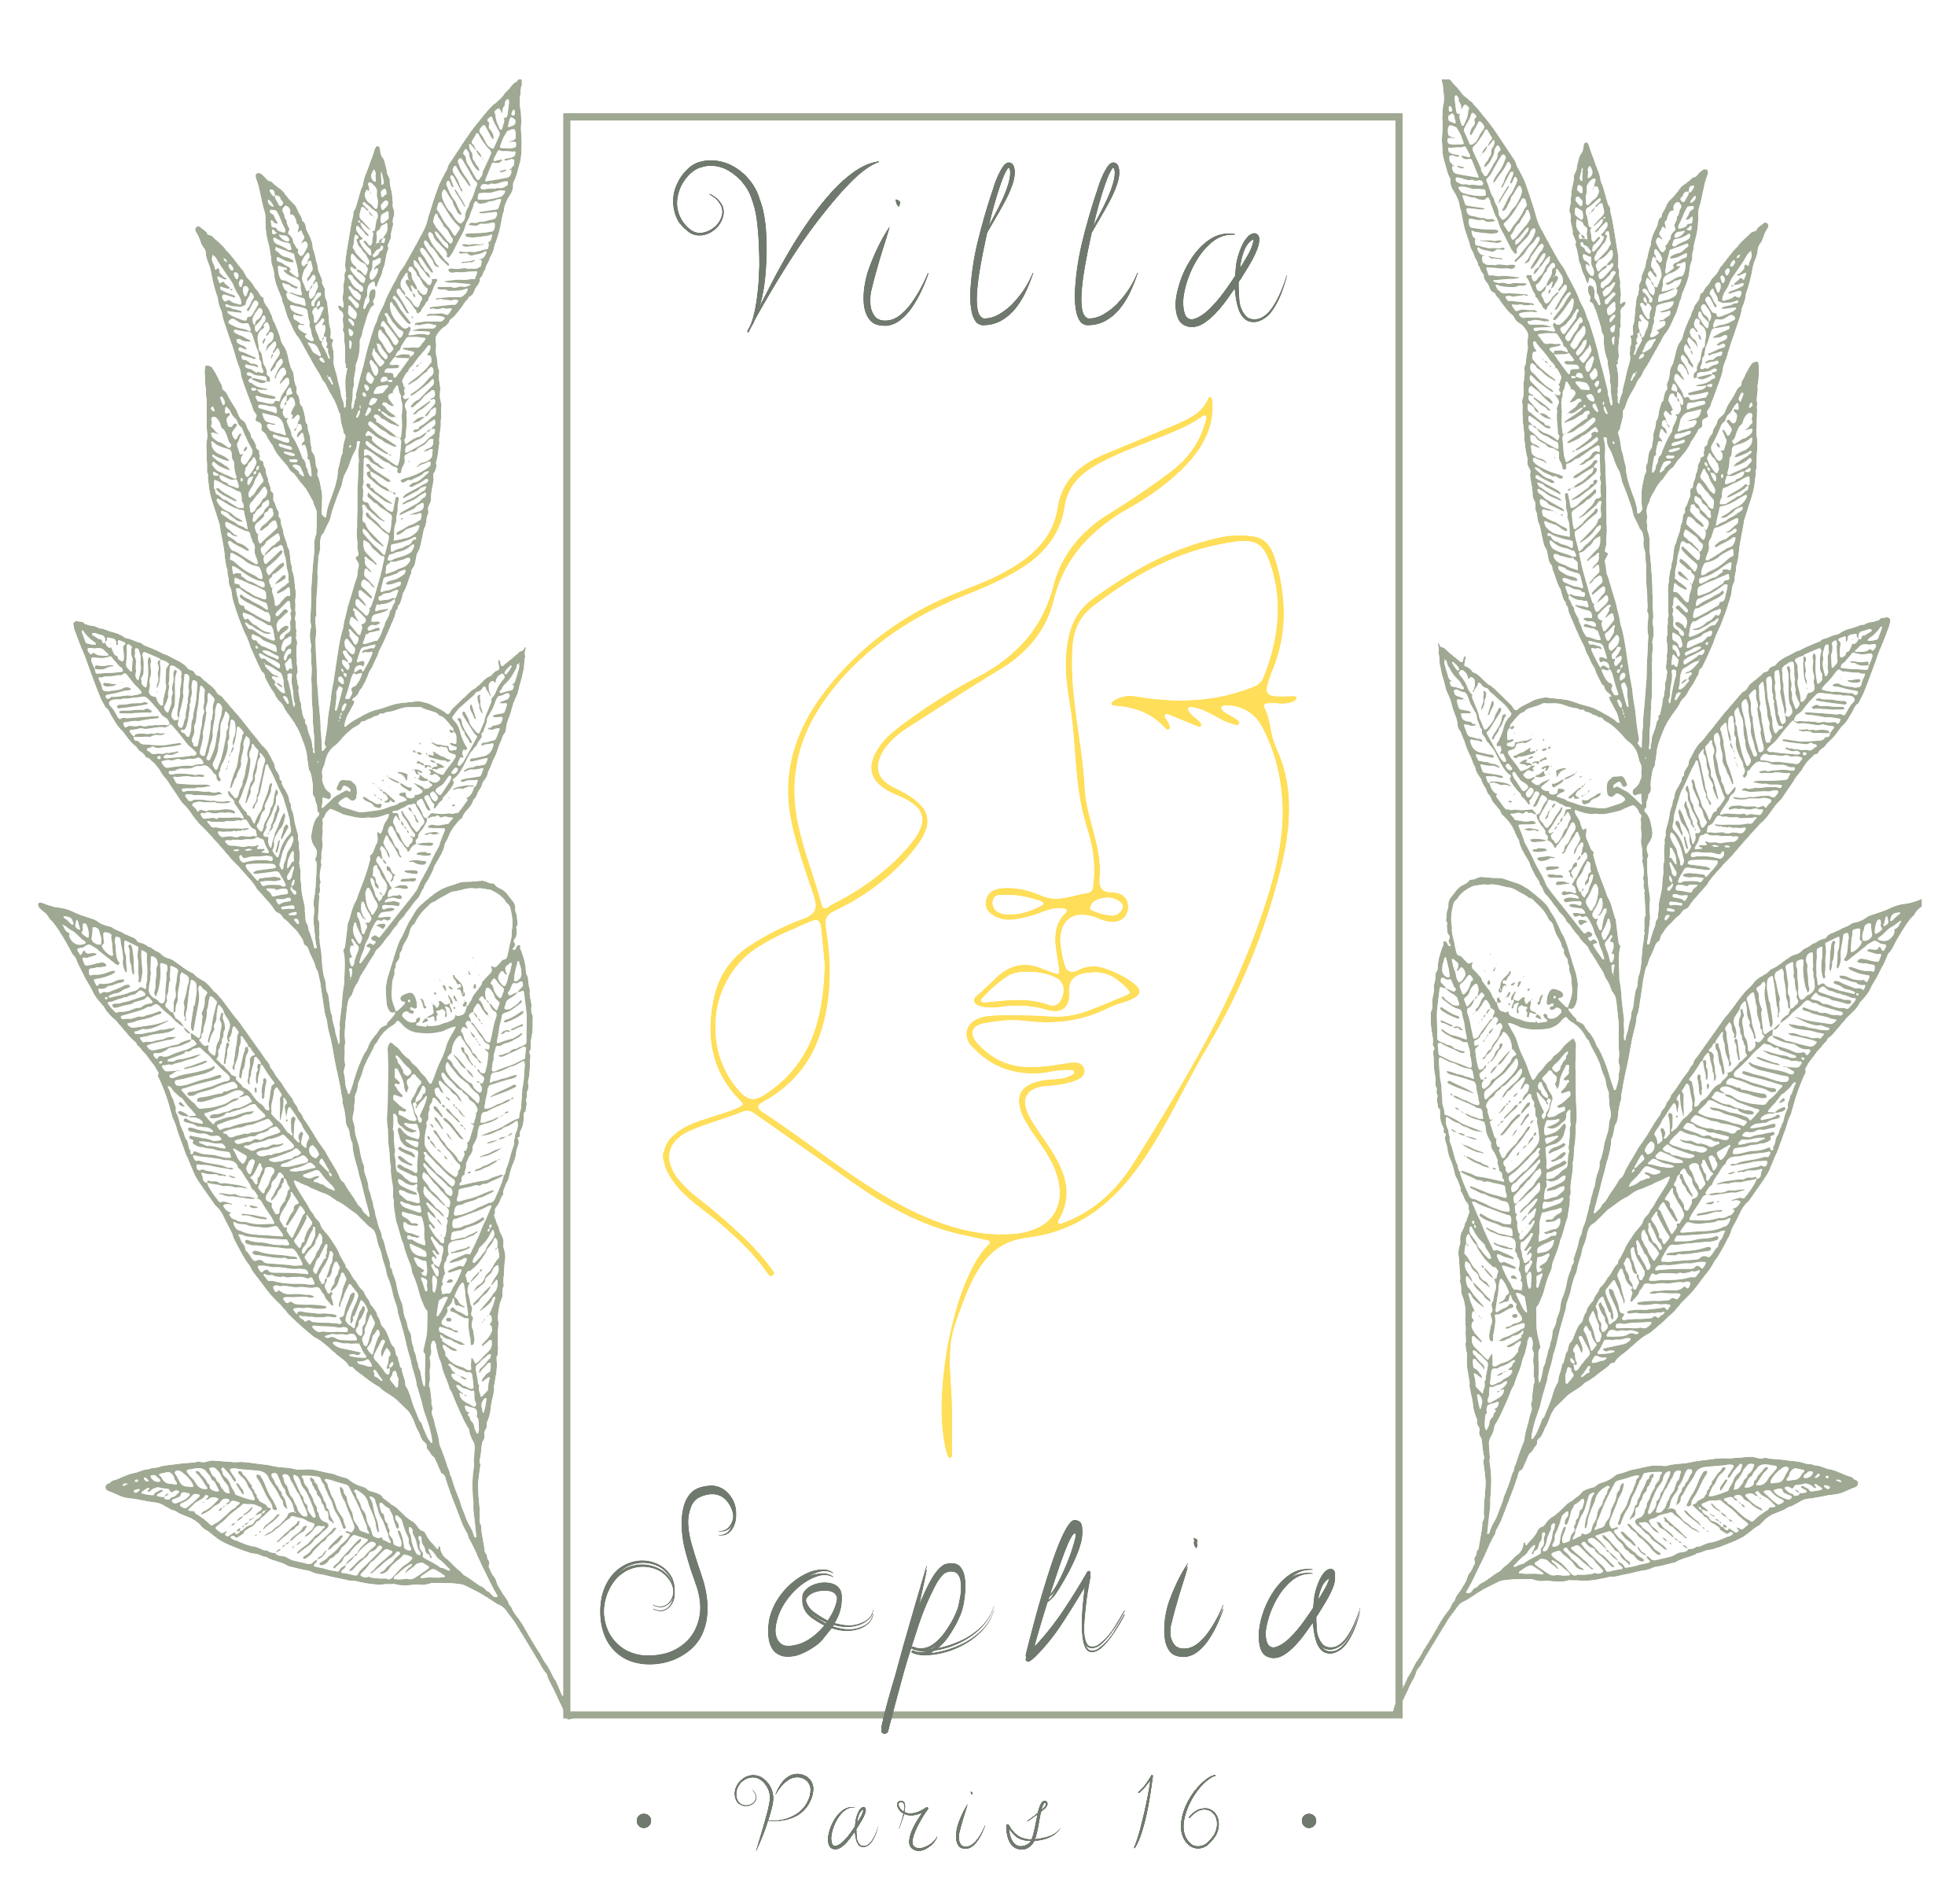 Villa Sophia